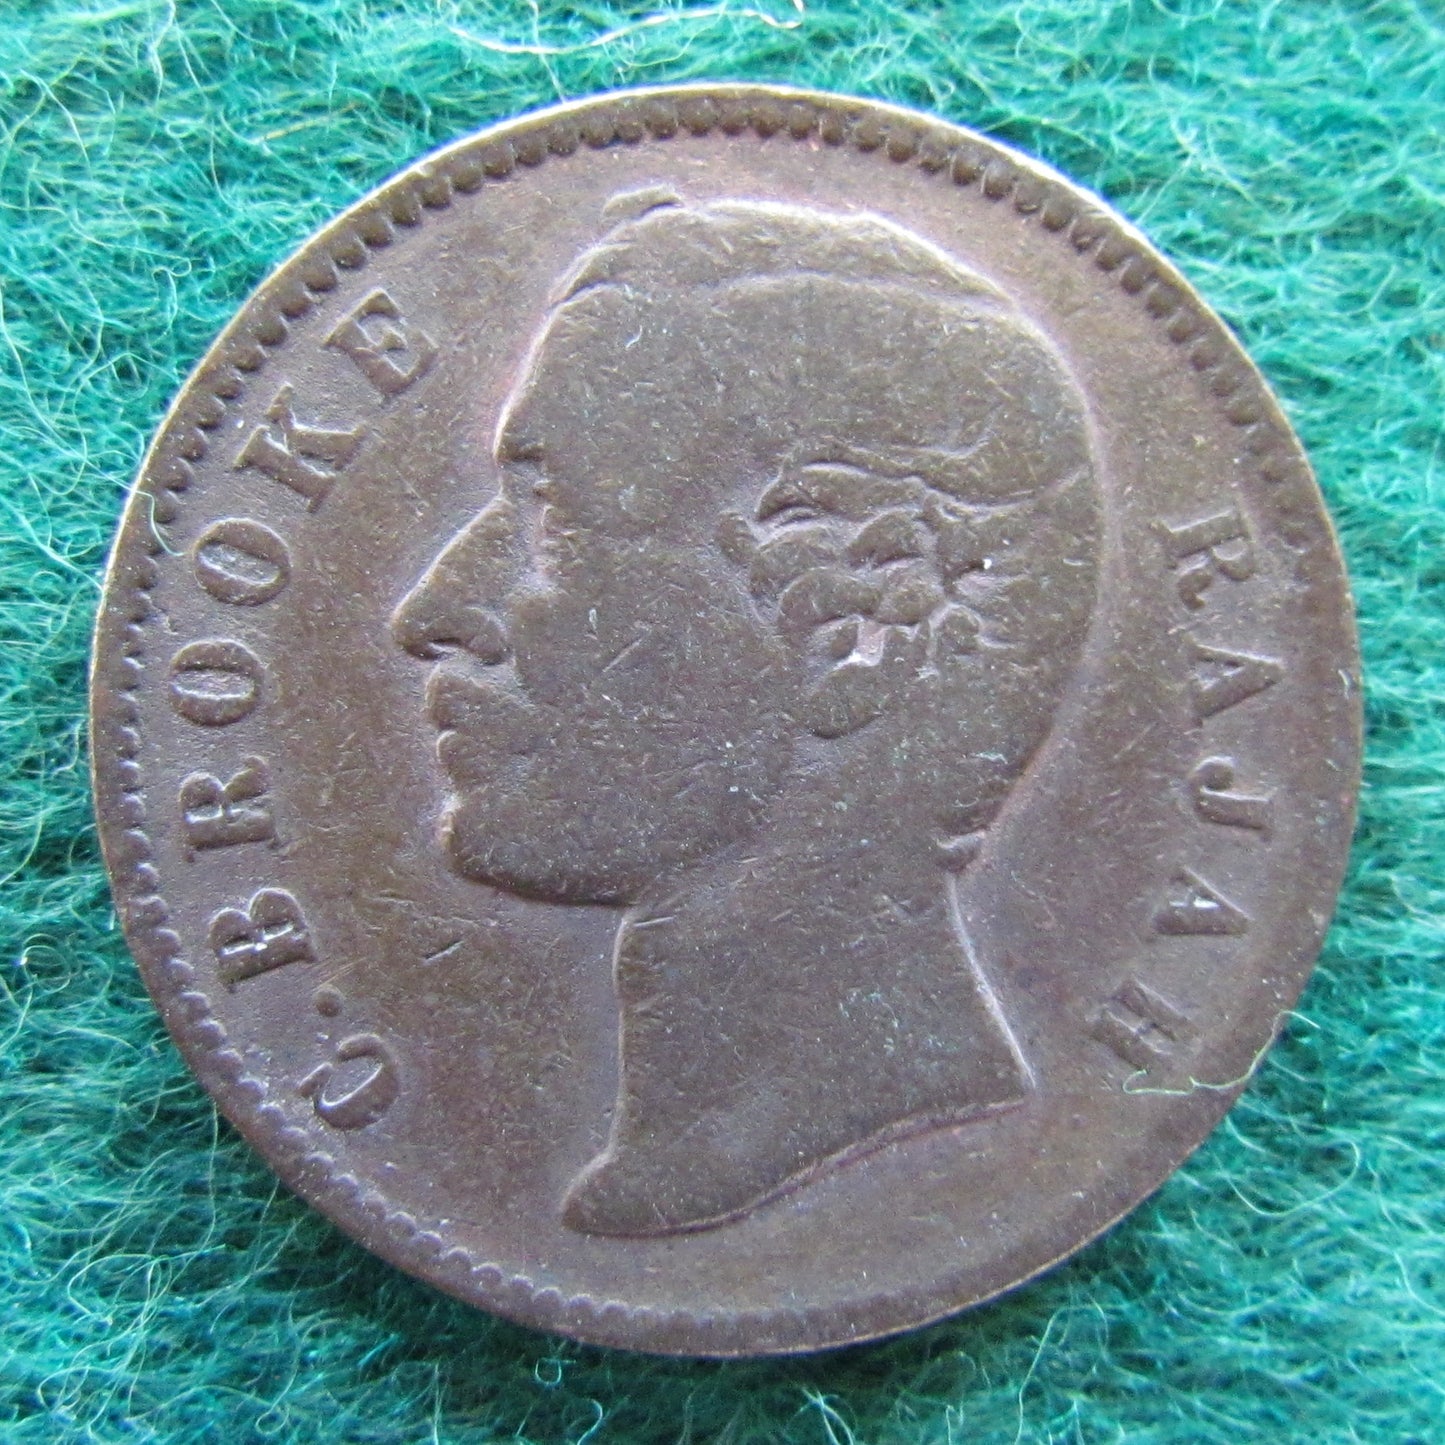 Sarawak 1879 Half Cent Coin C B Brooke Rajah